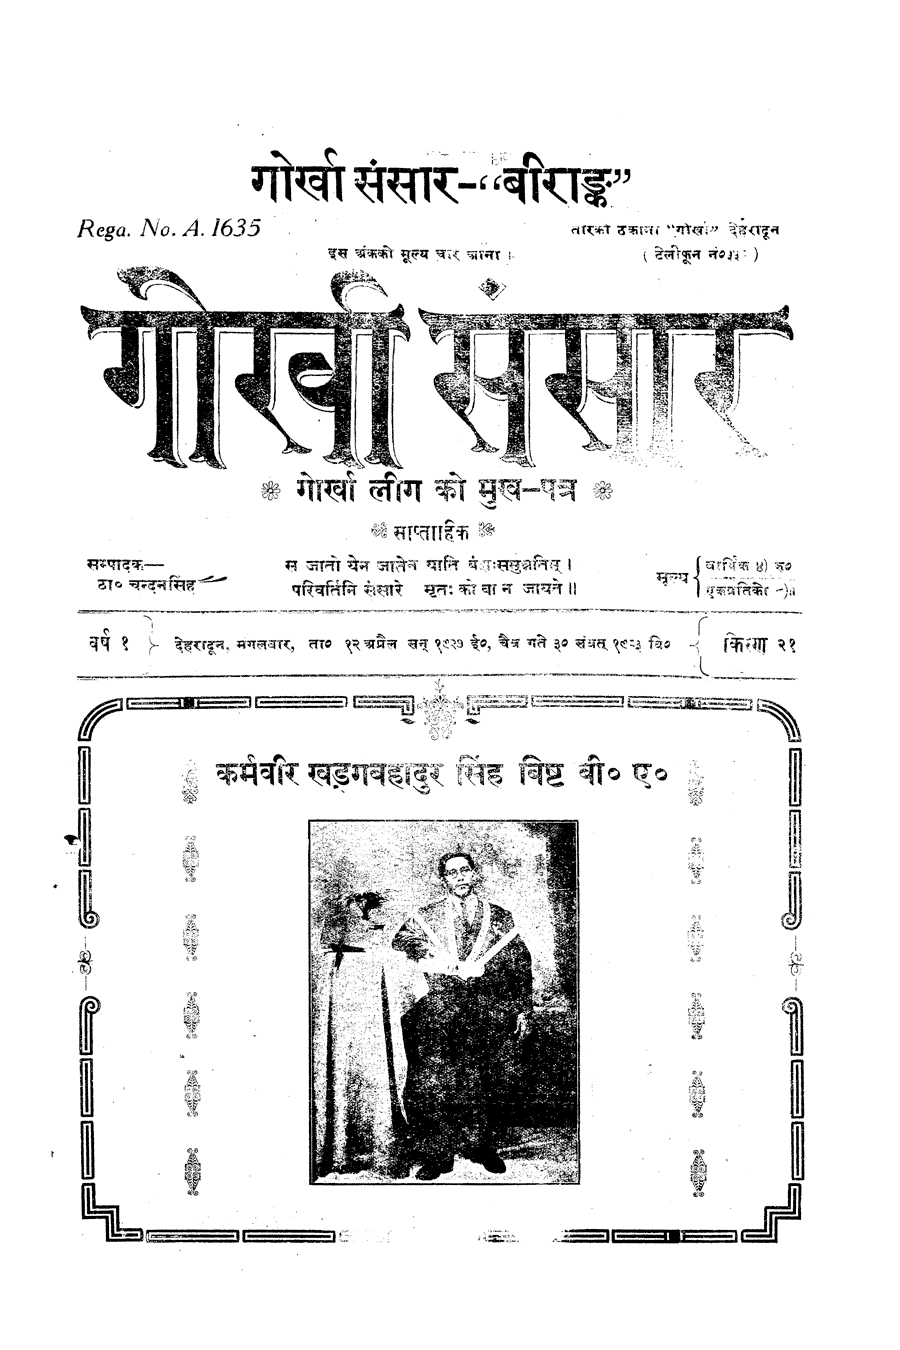 Gorkha Sansar, 12 April 1927, page 1